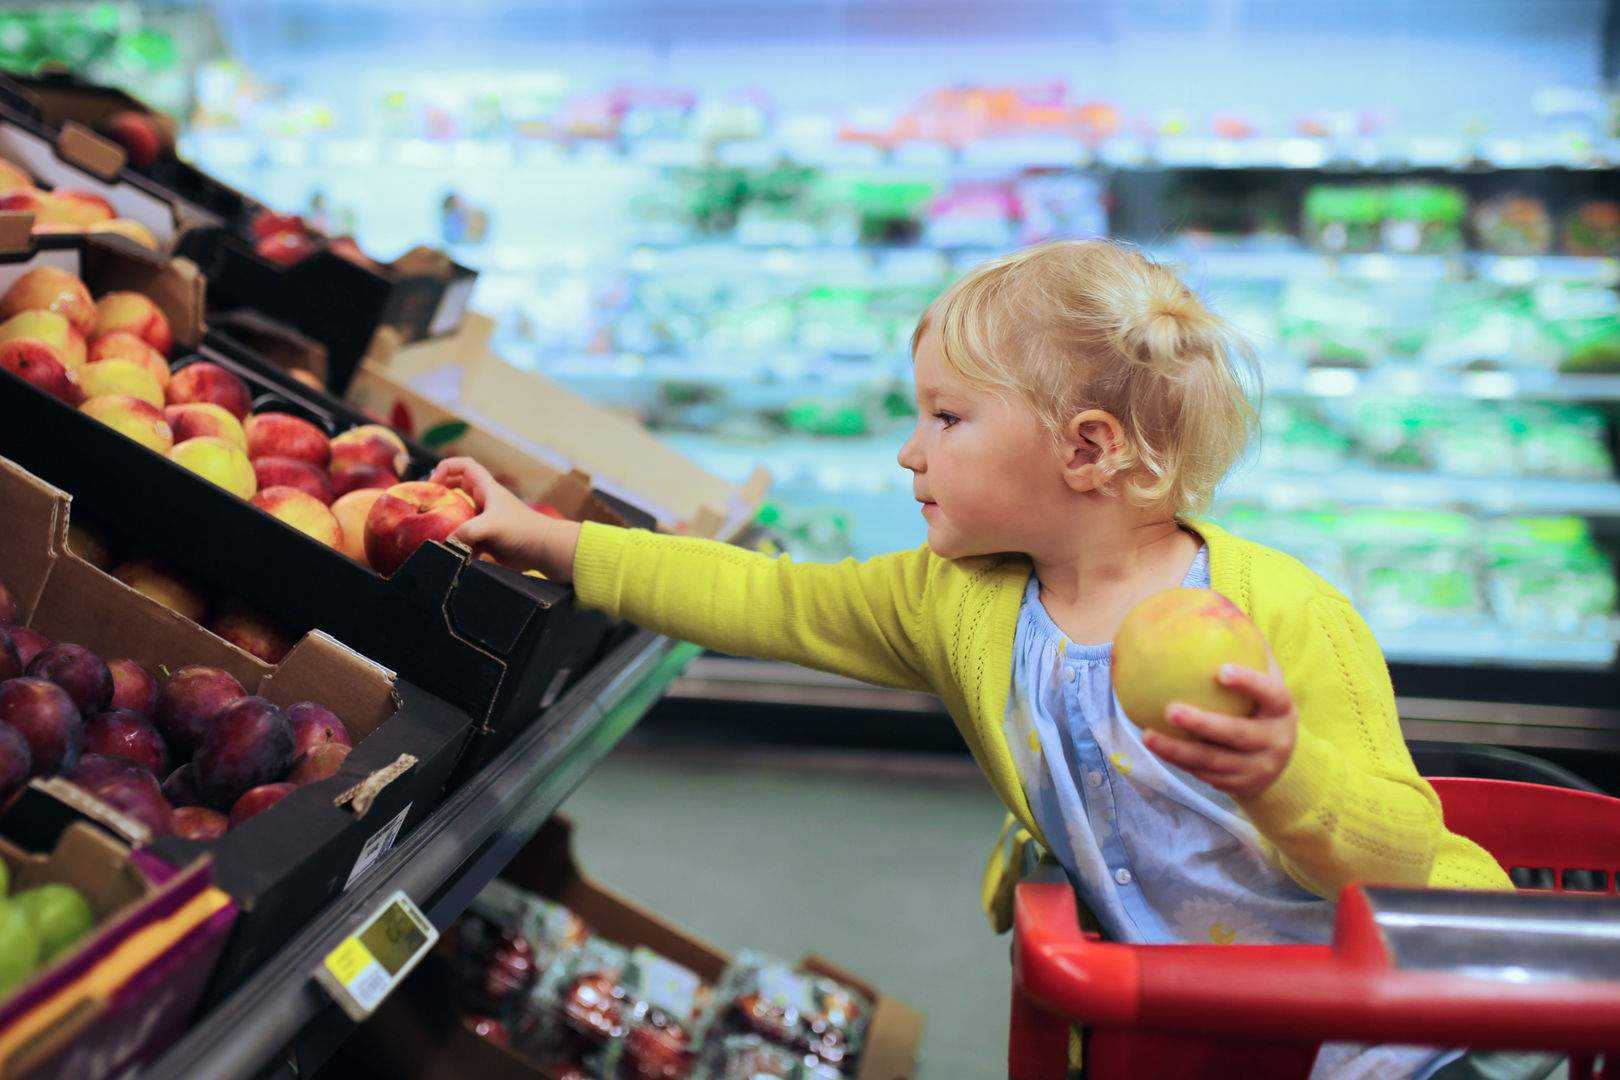 Мальчик купил в магазине n. Ребенок в магазине. Супермаркет для детей. Поход в магазин. Девочка в магазине.